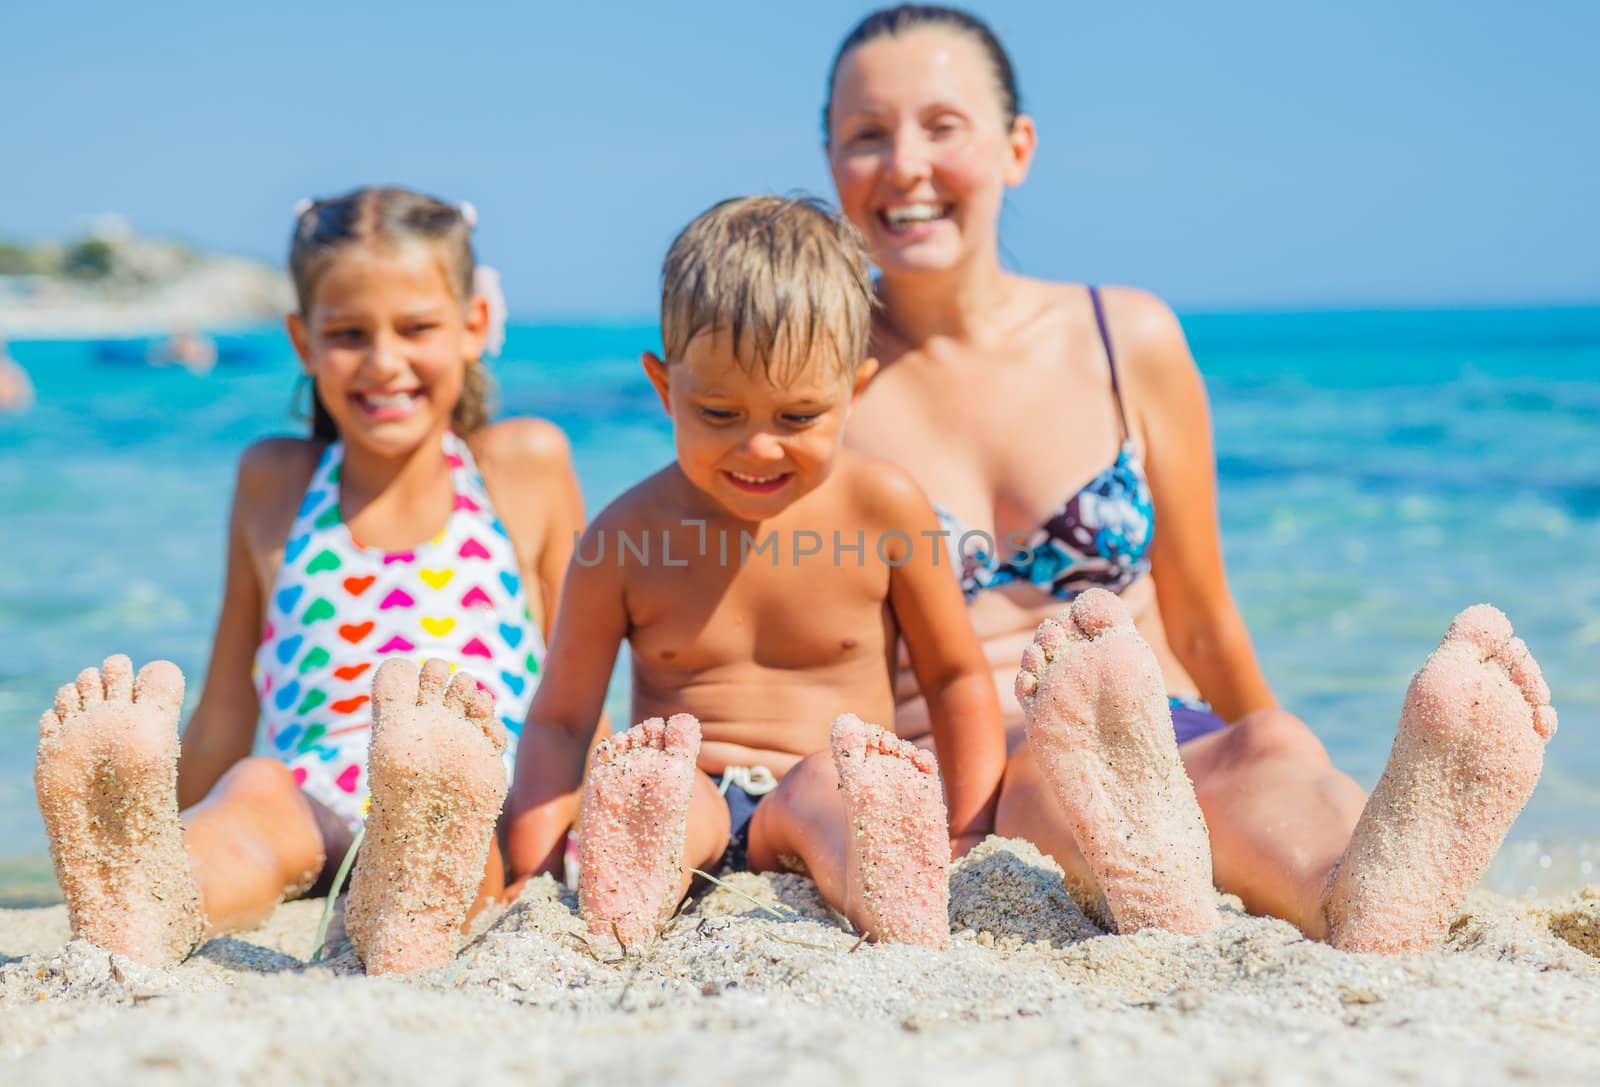 Summer beach - family playing on sandy beach. Focus on the feet